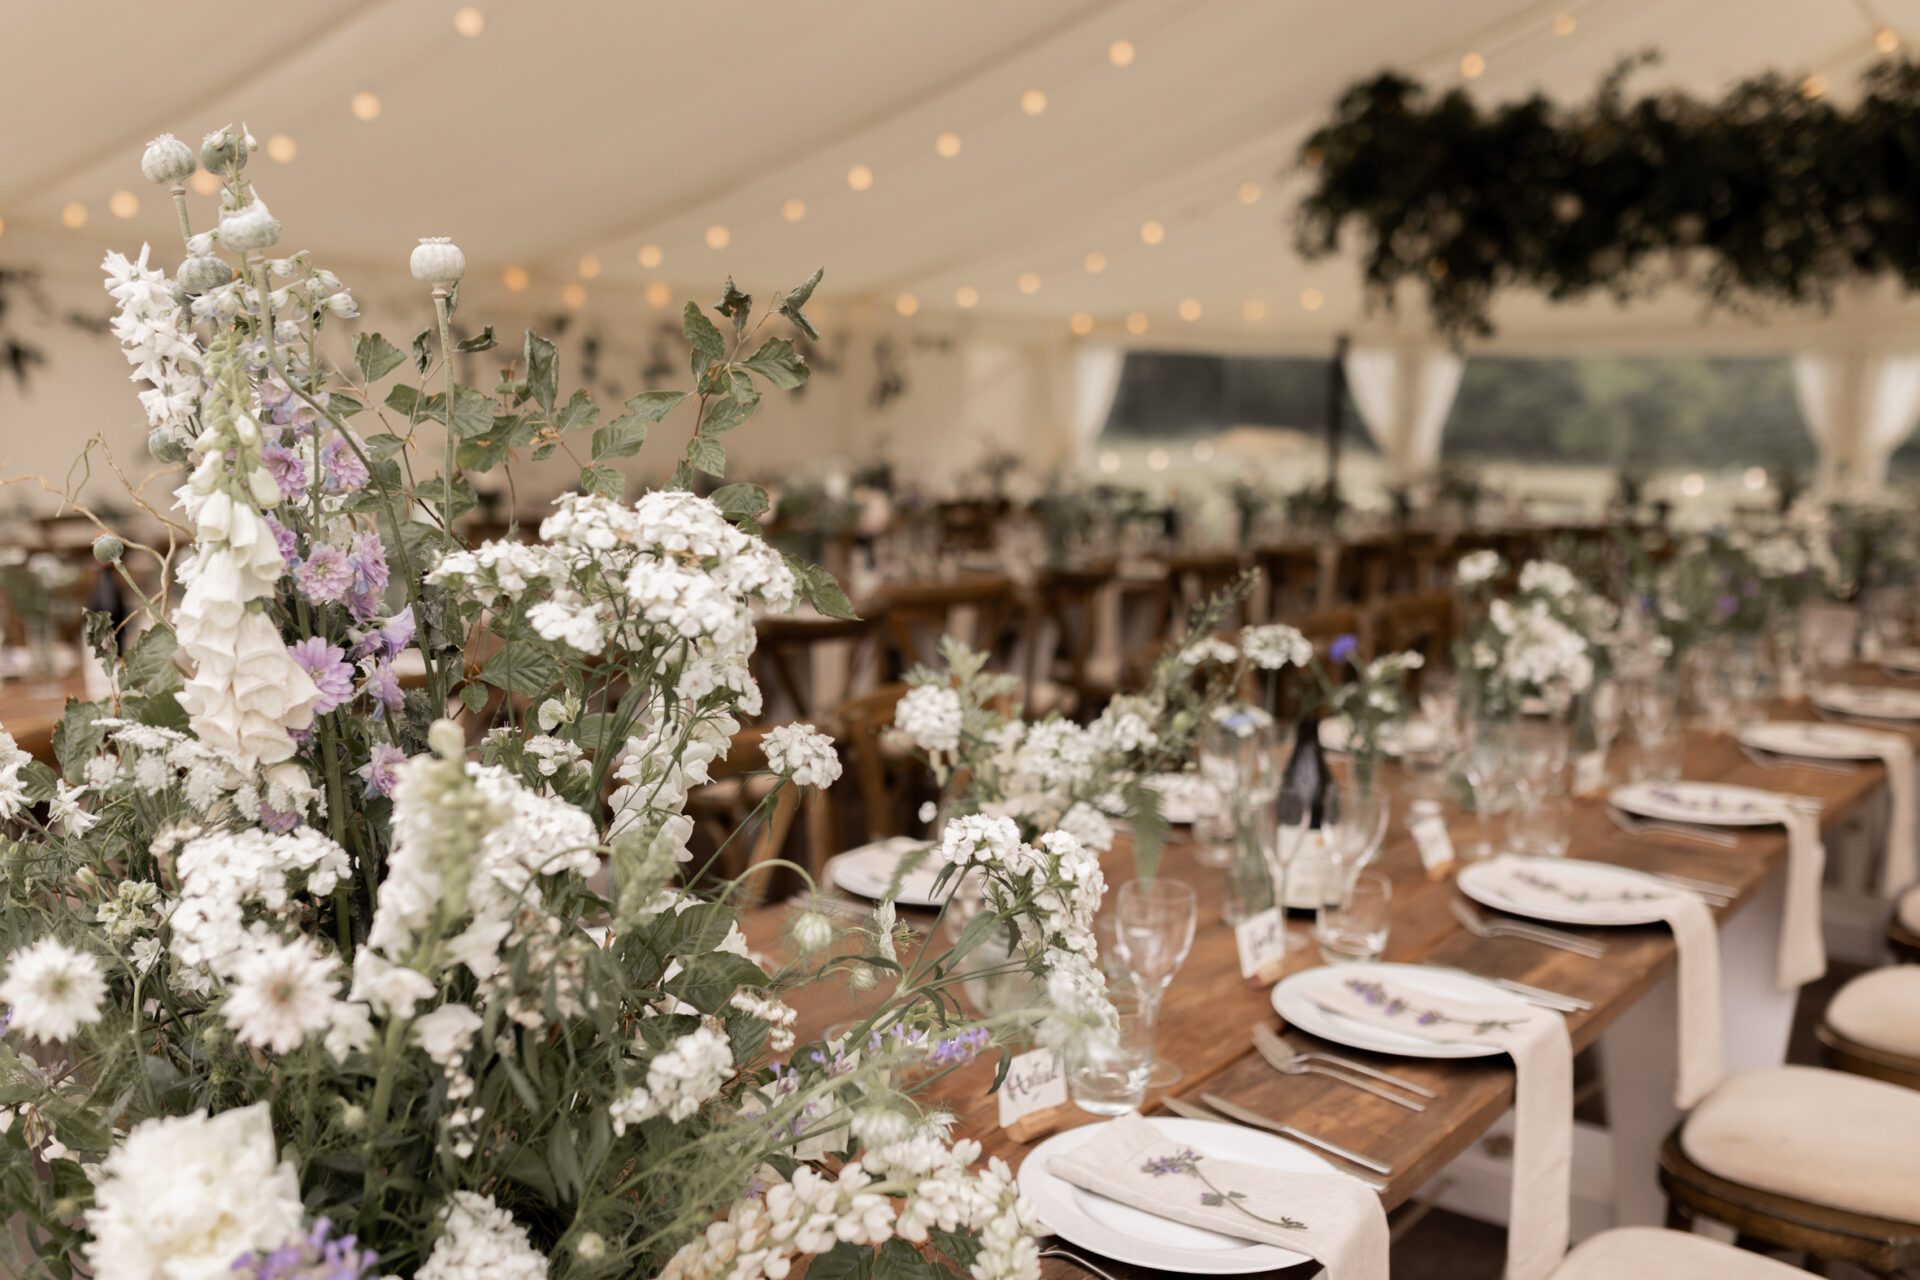 An abundance of local flowers decorate this Devon marquee wedding